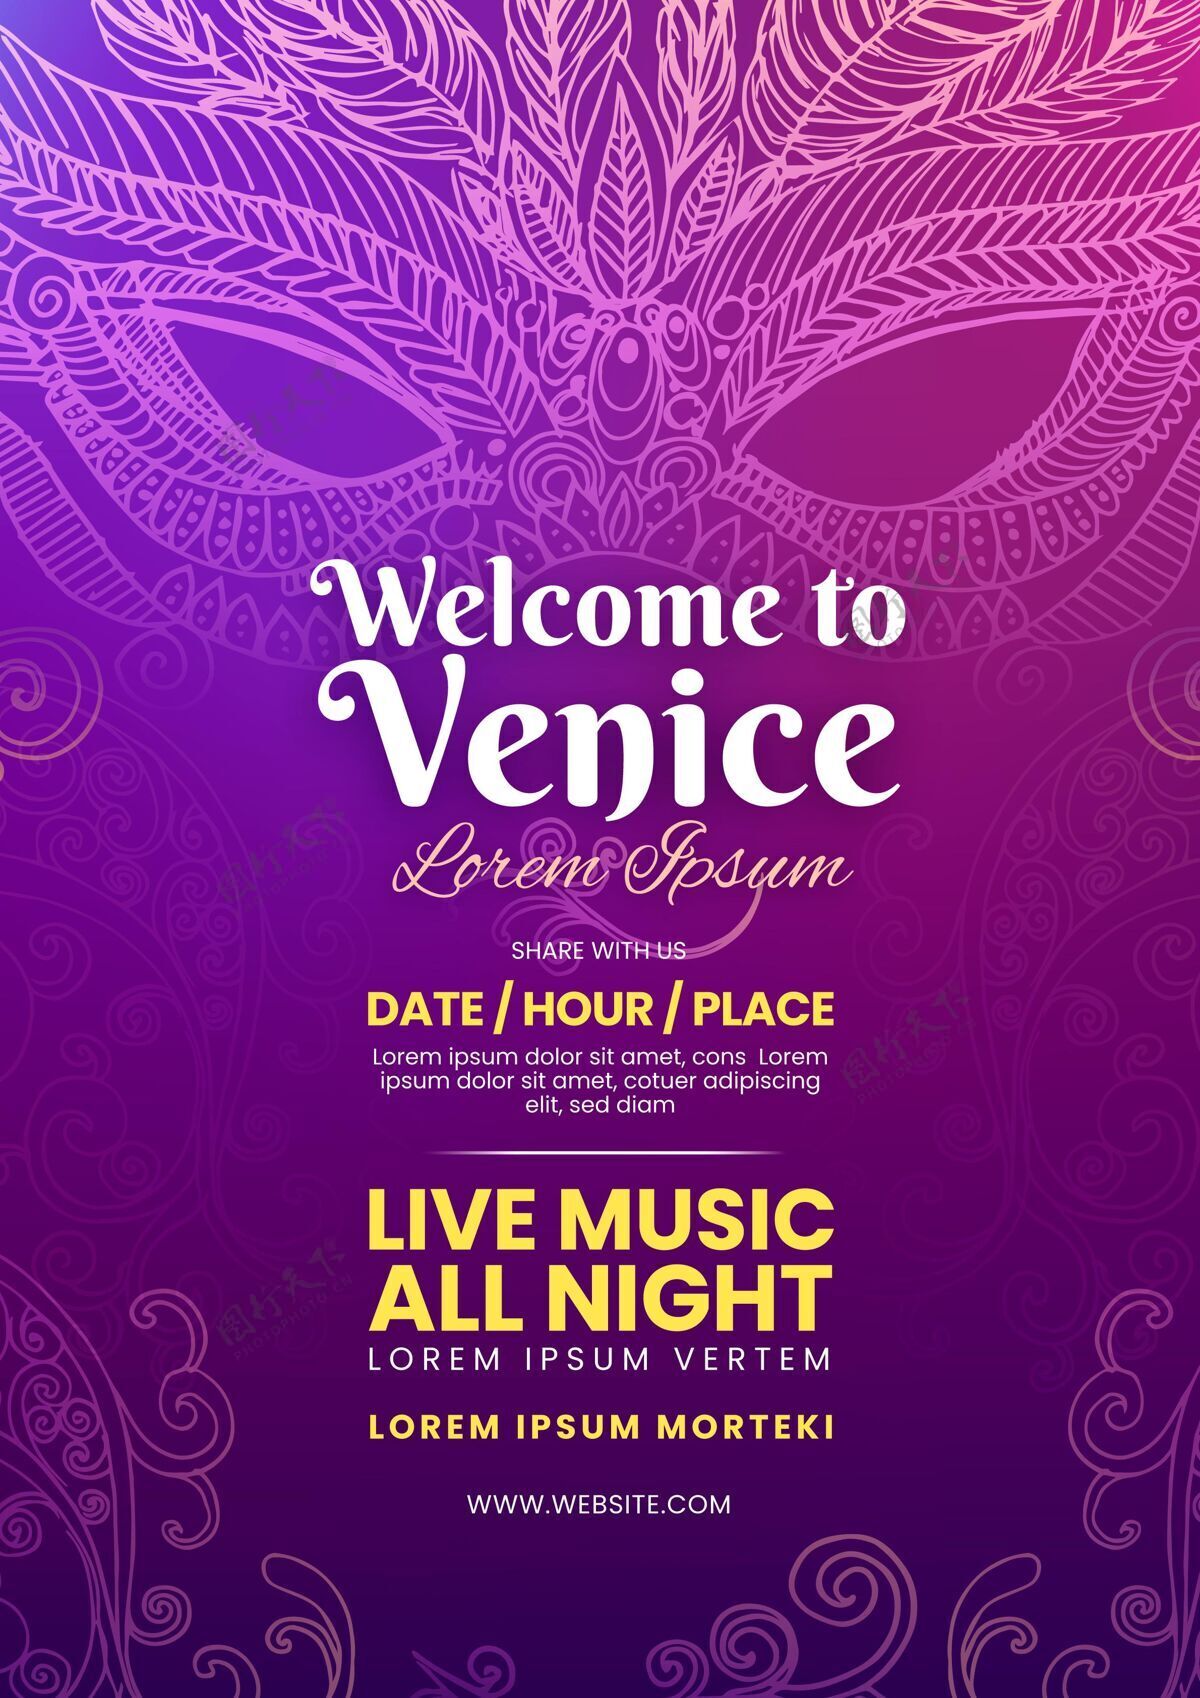 绘画威尼斯狂欢节海报模板在紫罗兰色调威尼斯人嘉年华海报活动